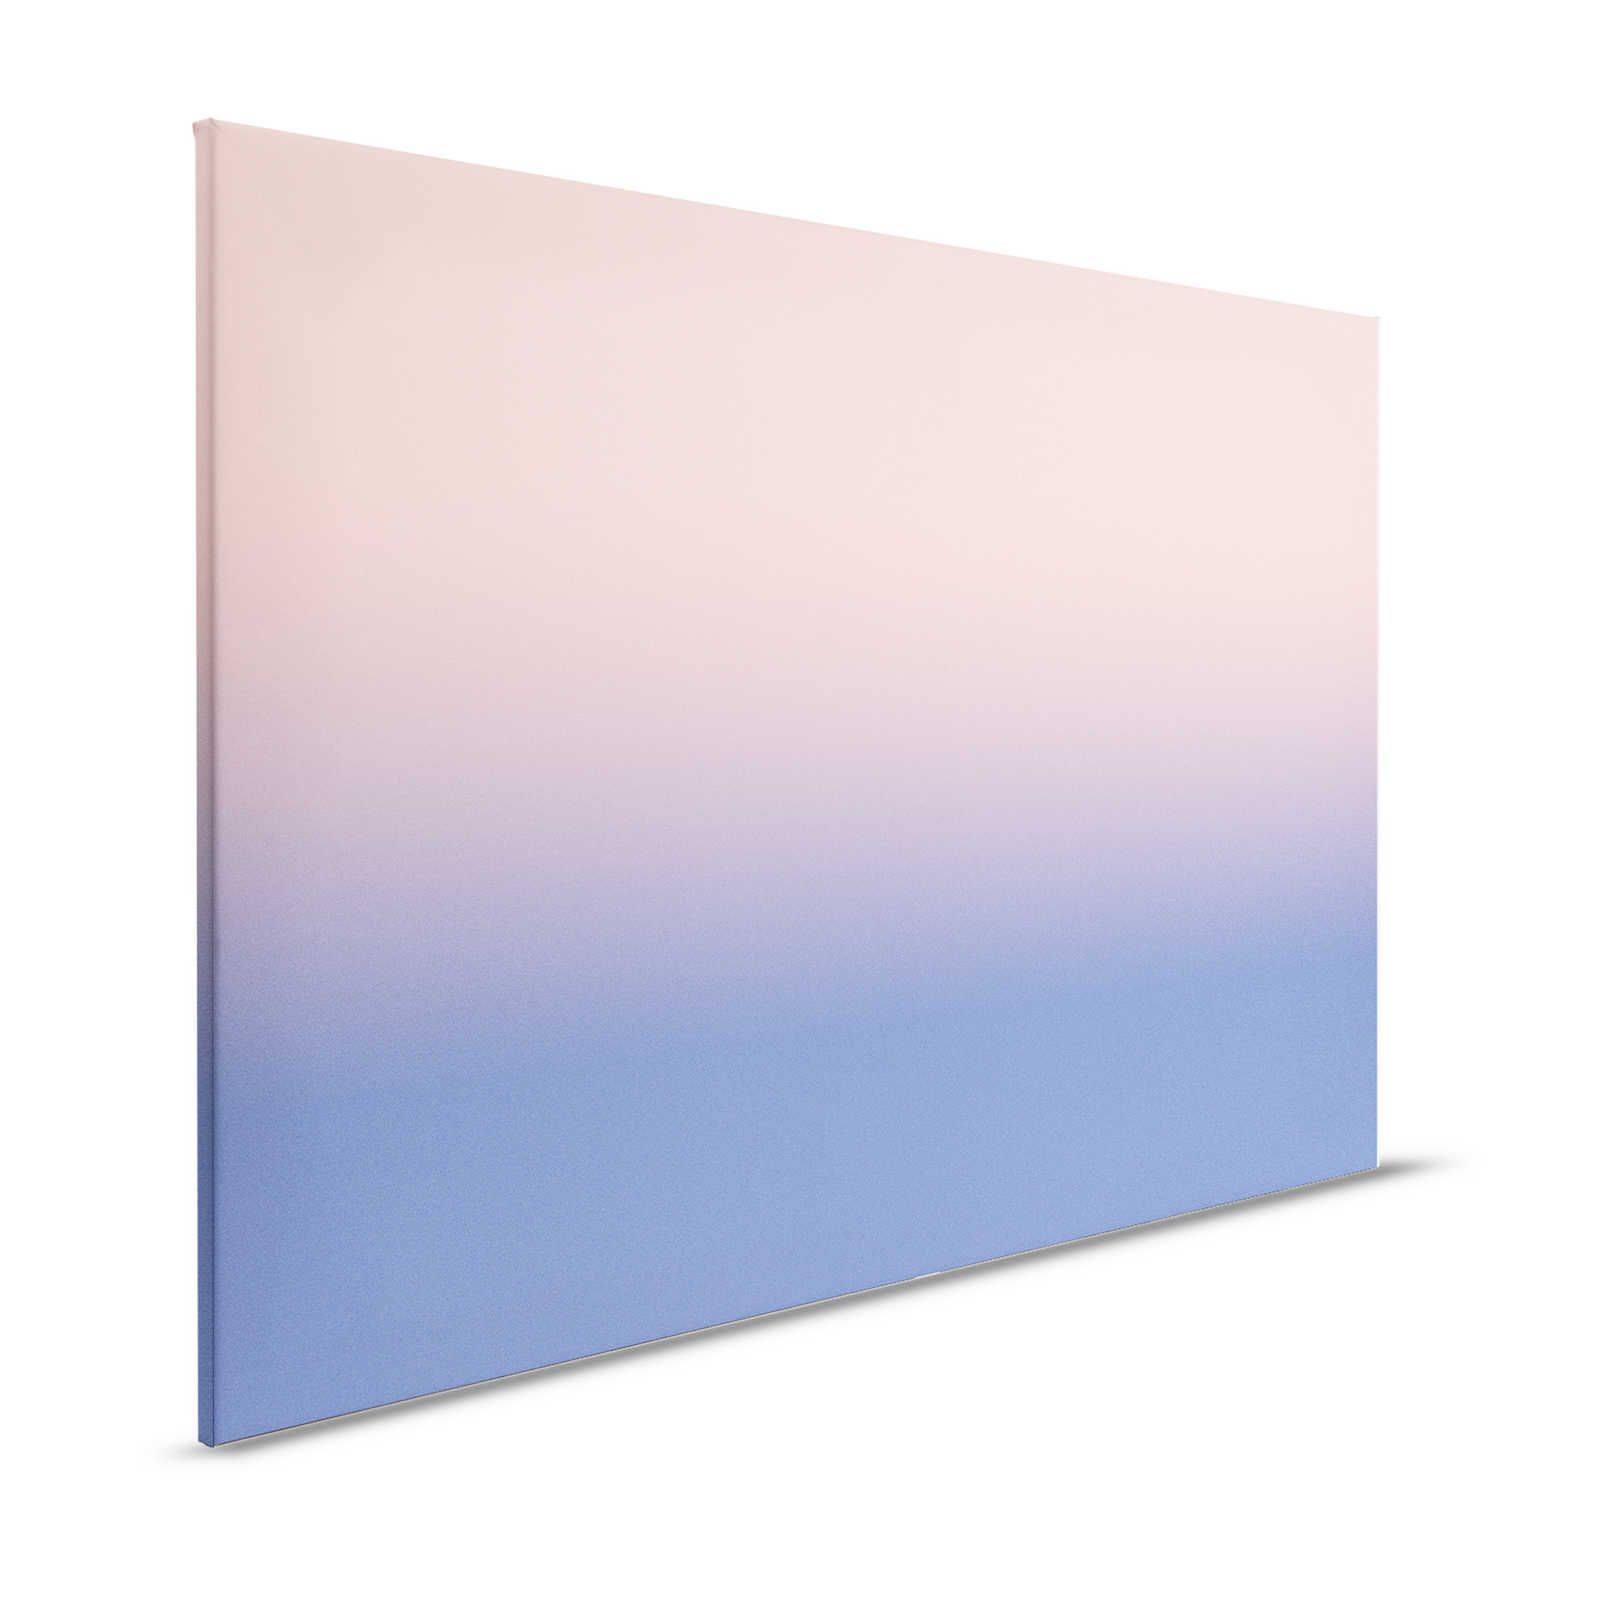 Colour Studio 2 - Lienzo Ombre Rosa y Violeta para Habitación de Niña - 1,20 m x 0,80 m
